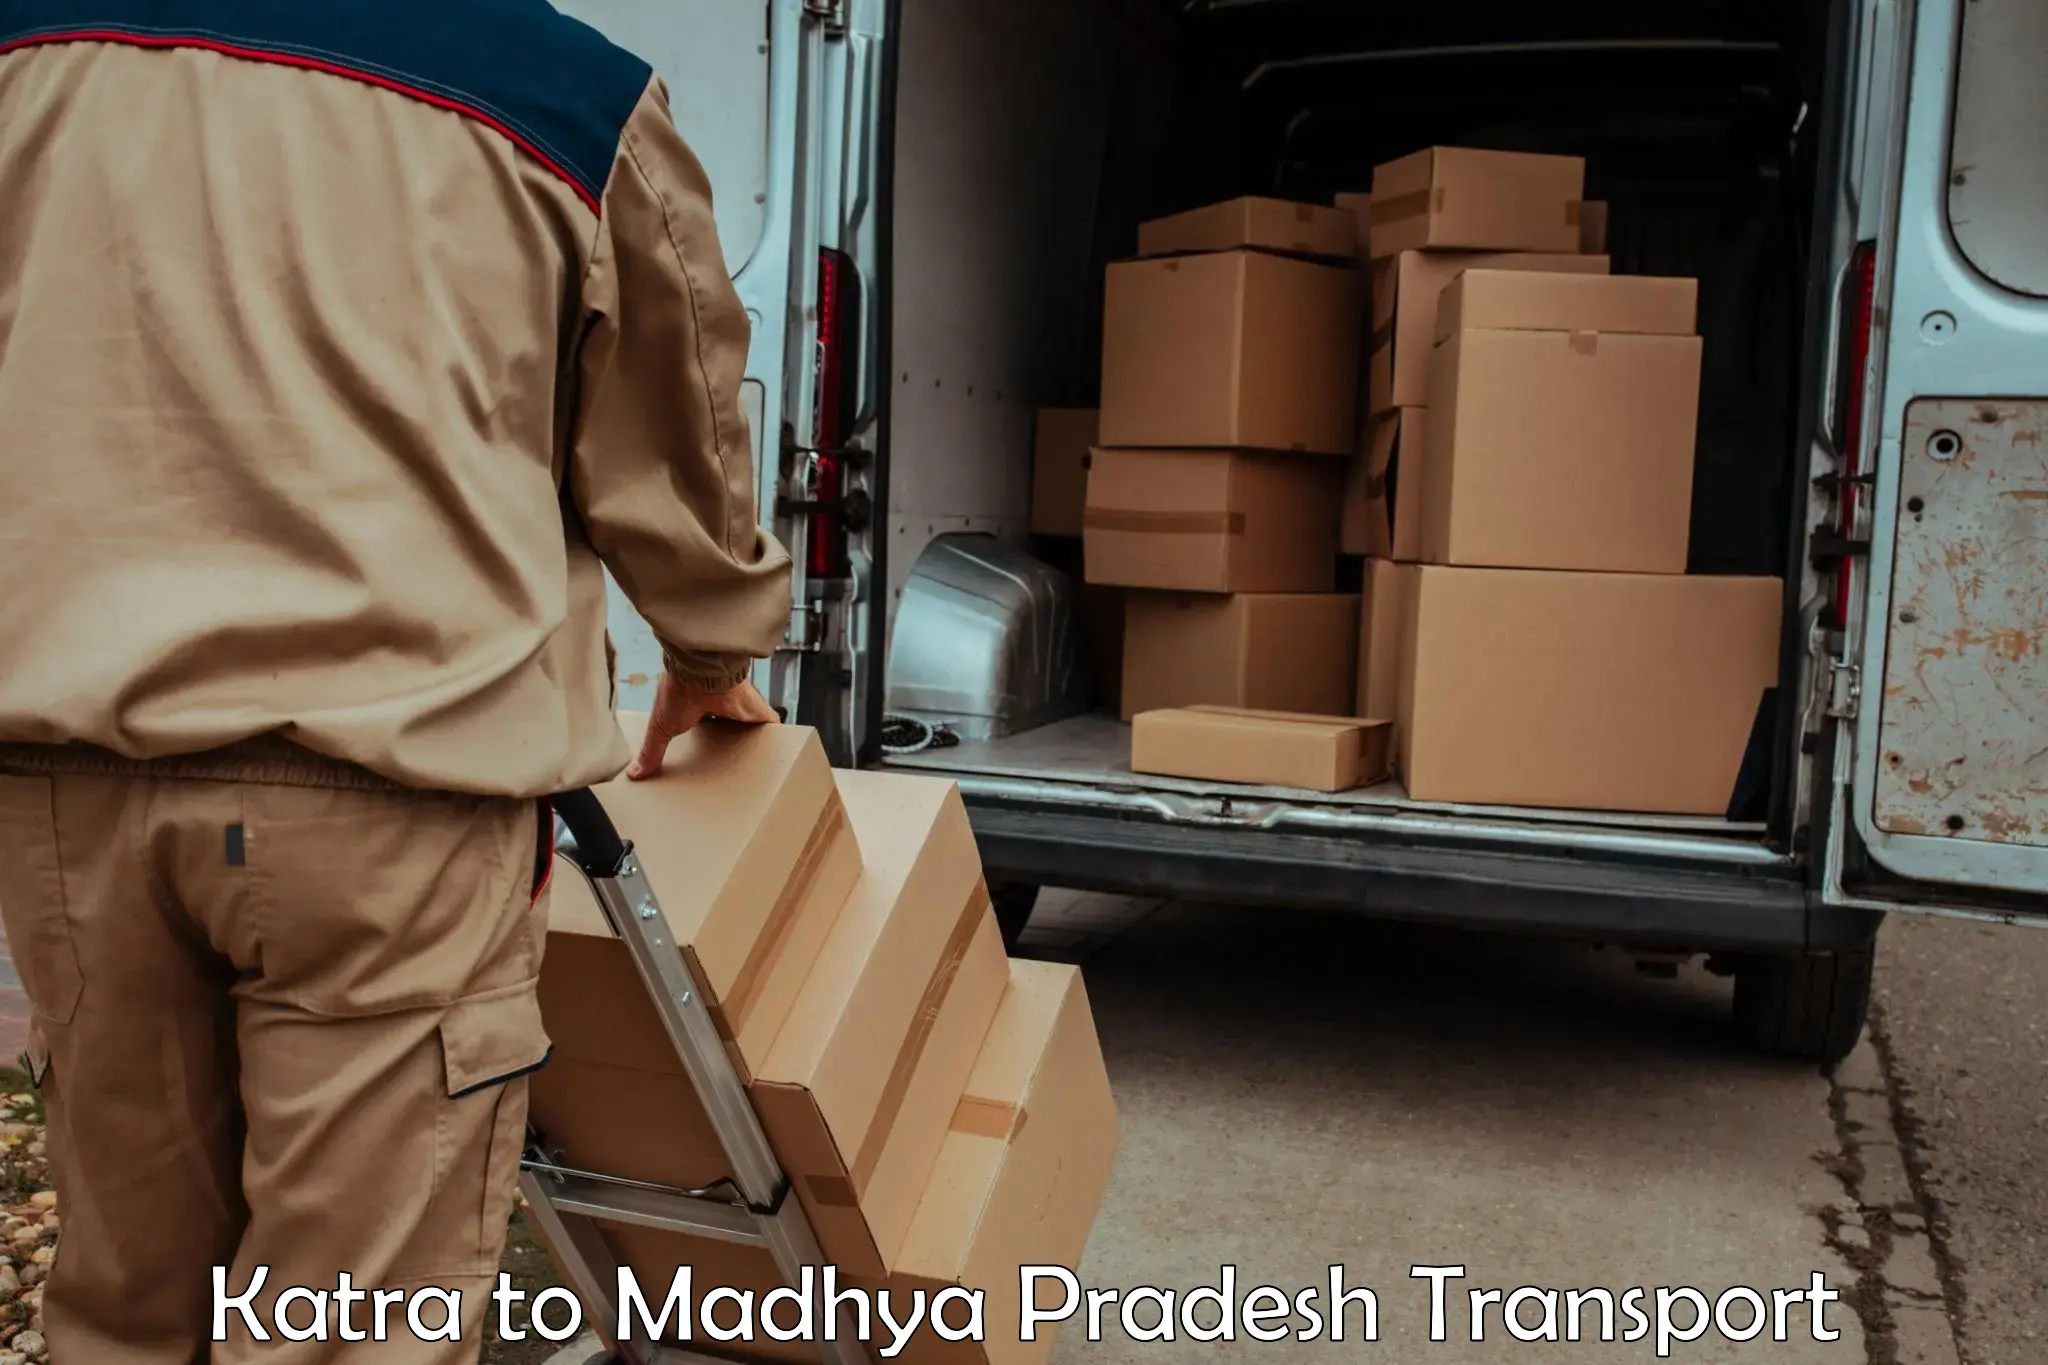 Parcel transport services Katra to Begumganj